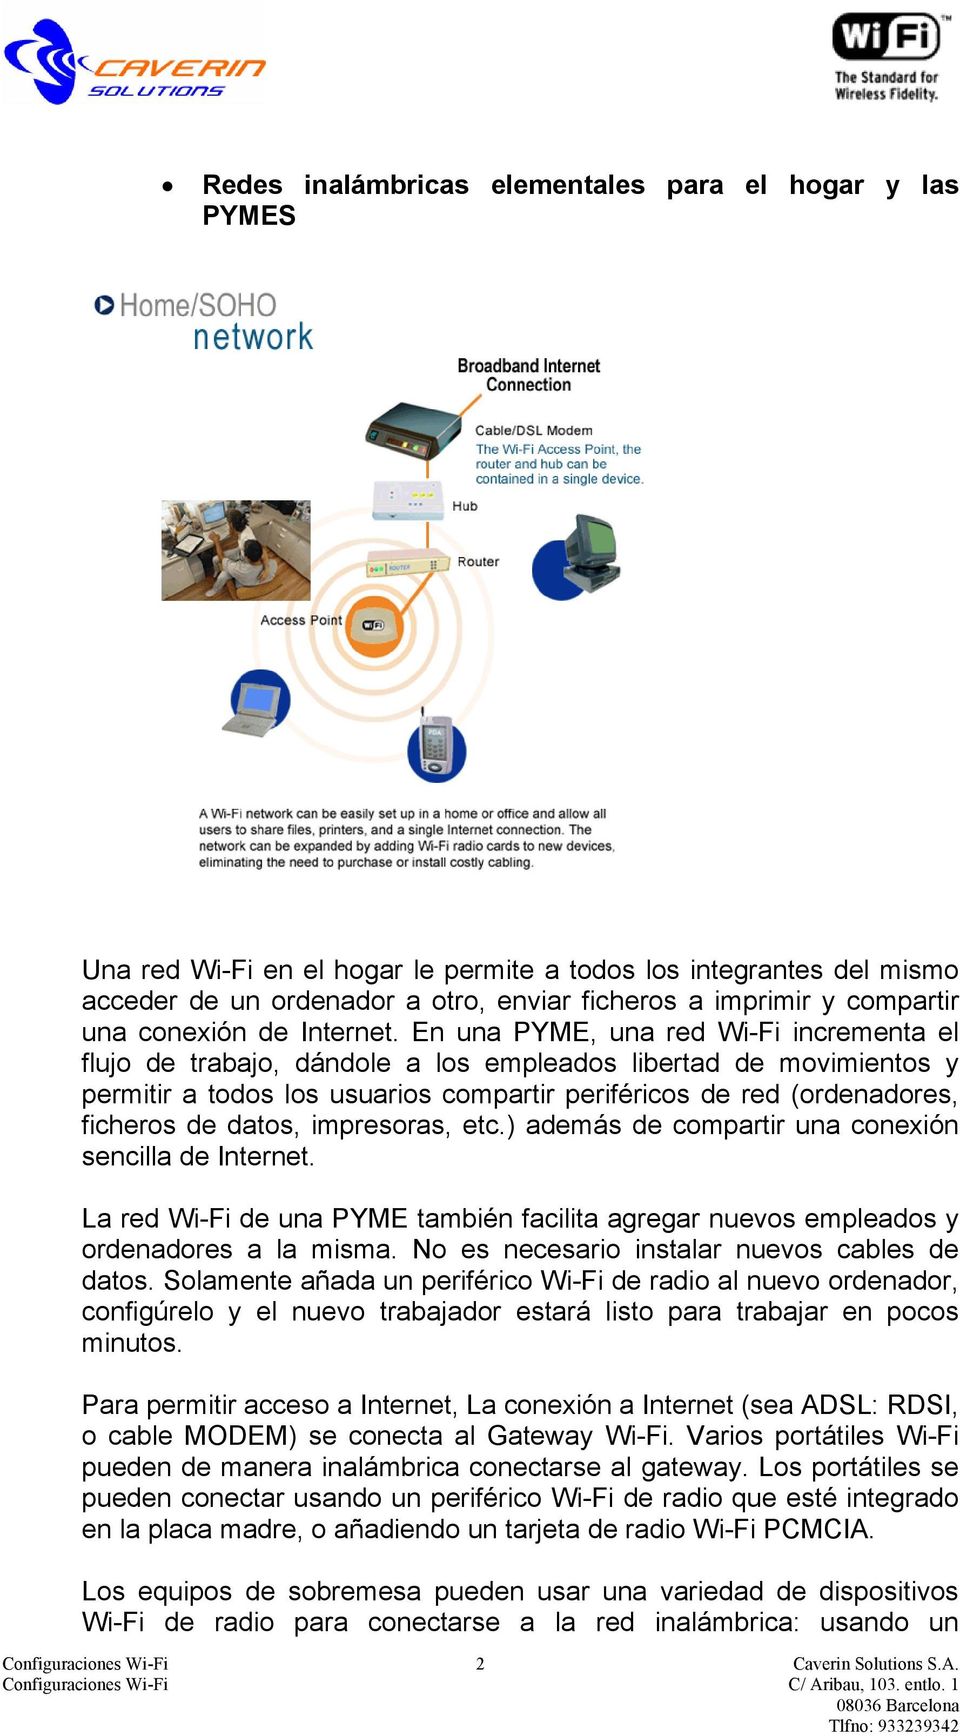 En una PYME, una red Wi-Fi incrementa el flujo de trabajo, dándole a los empleados libertad de movimientos y permitir a todos los usuarios compartir periféricos de red (ordenadores, ficheros de